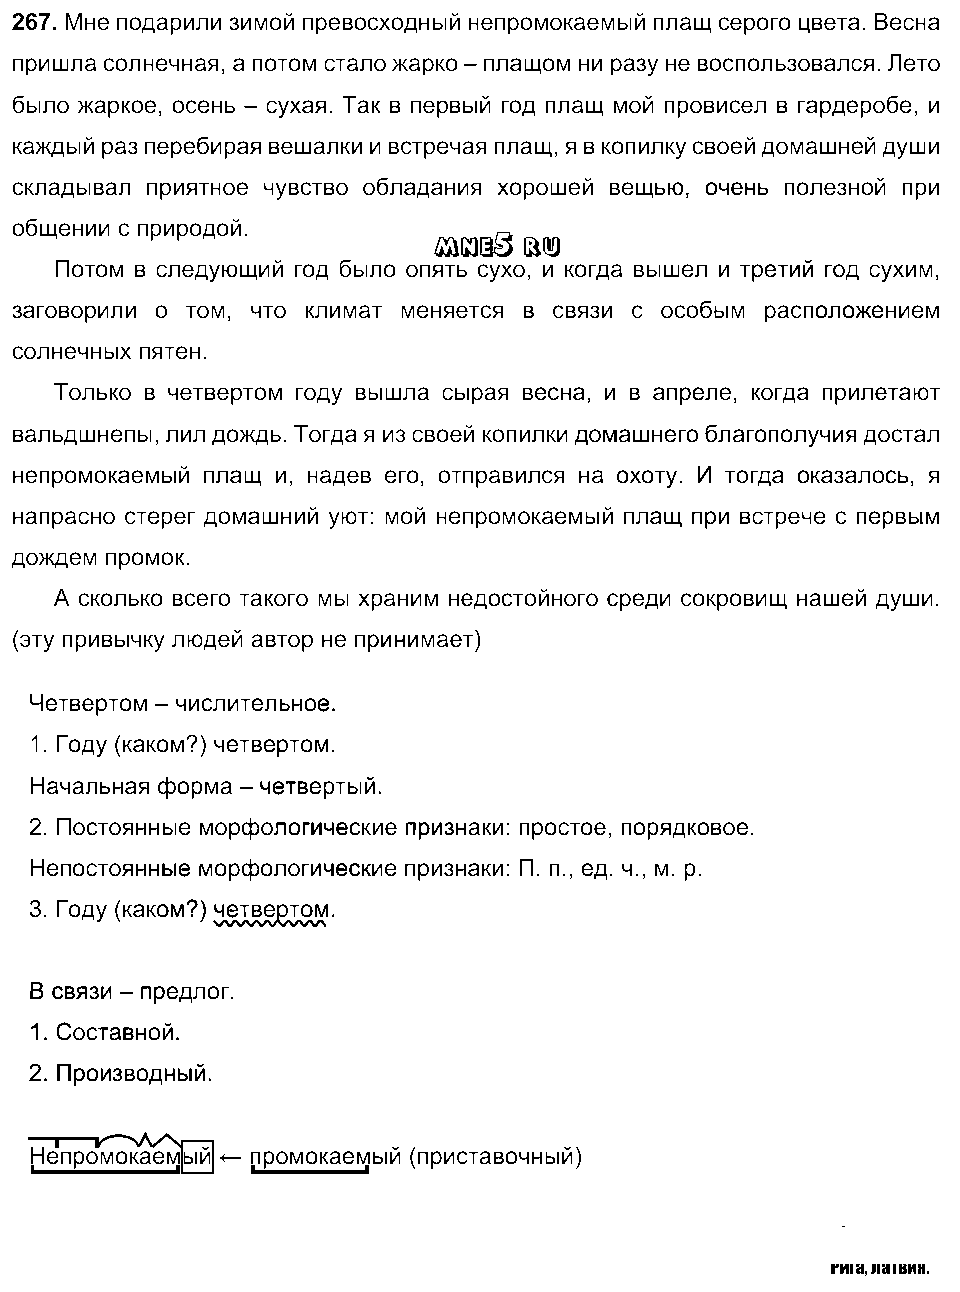 ГДЗ Русский язык 9 класс - 267